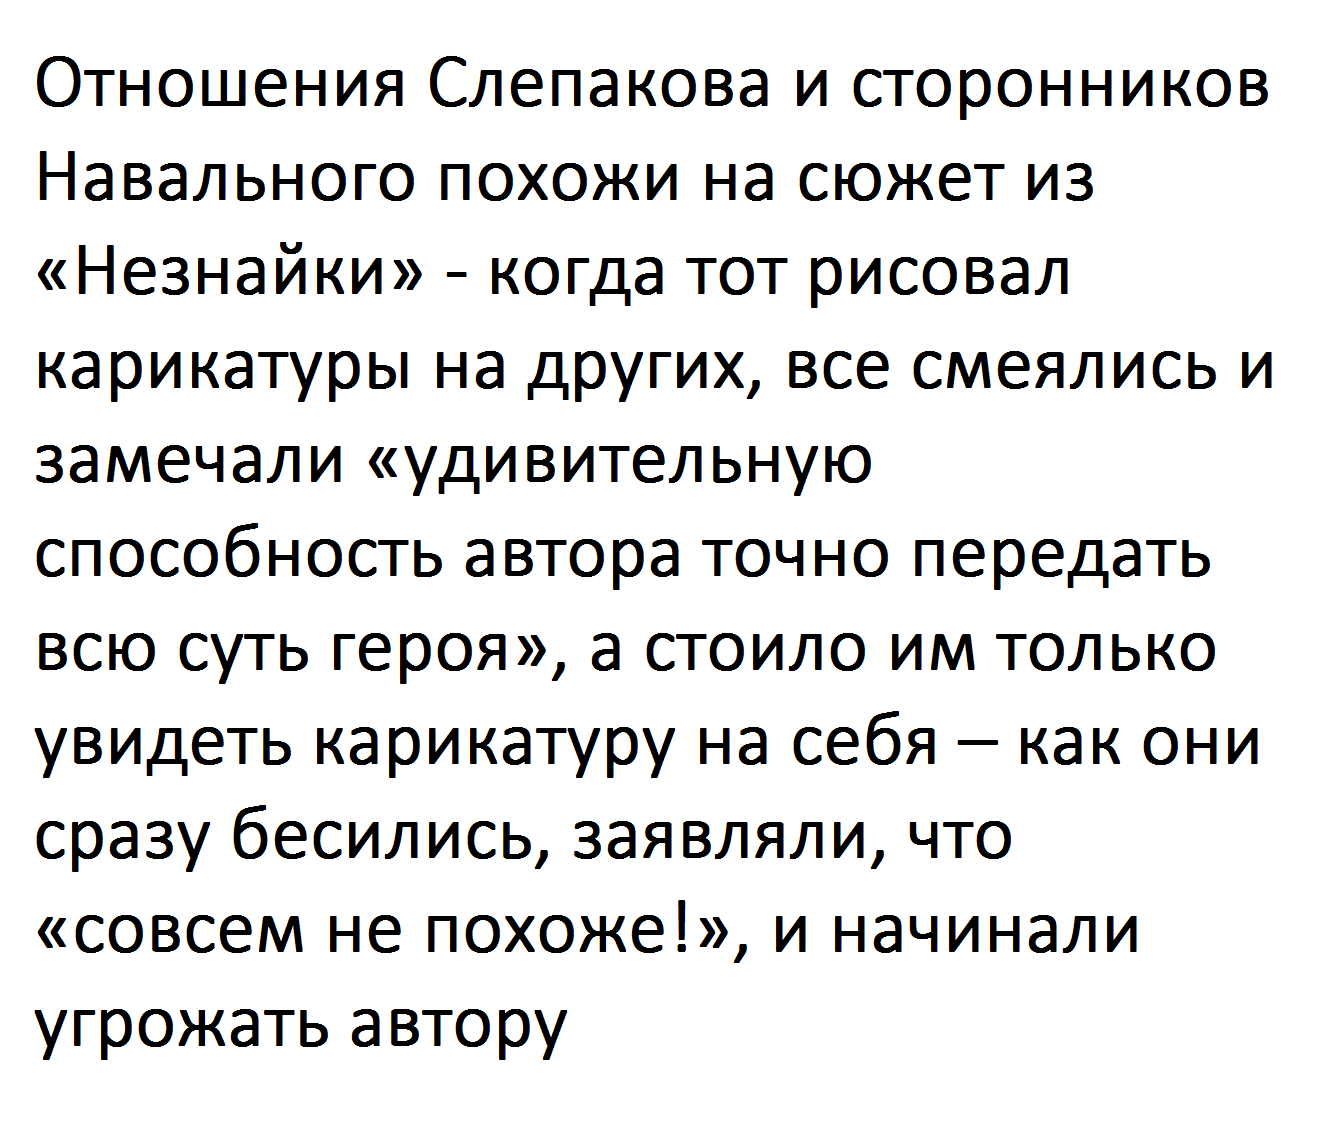 (PDF) О литературной репутации intim-top.ru | Сергей Николаев - intim-top.ru